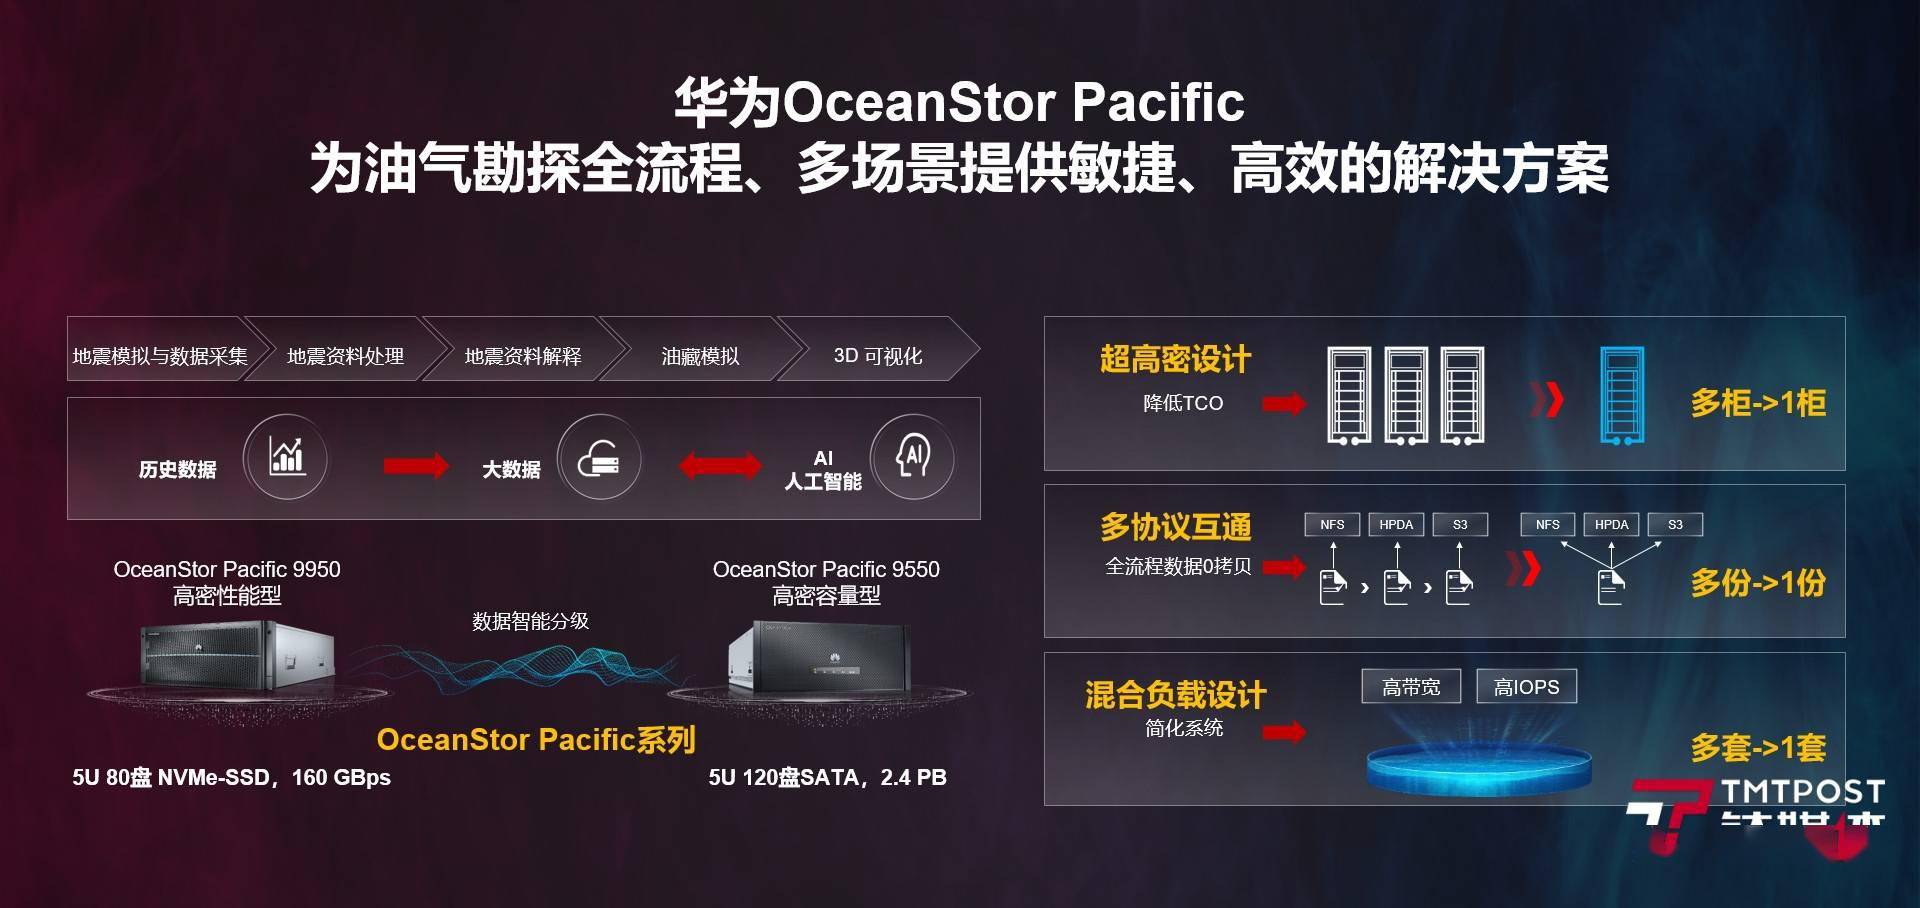 东方物探选择了规模化集中部署华为oceanstor pacific存储系统,其天然